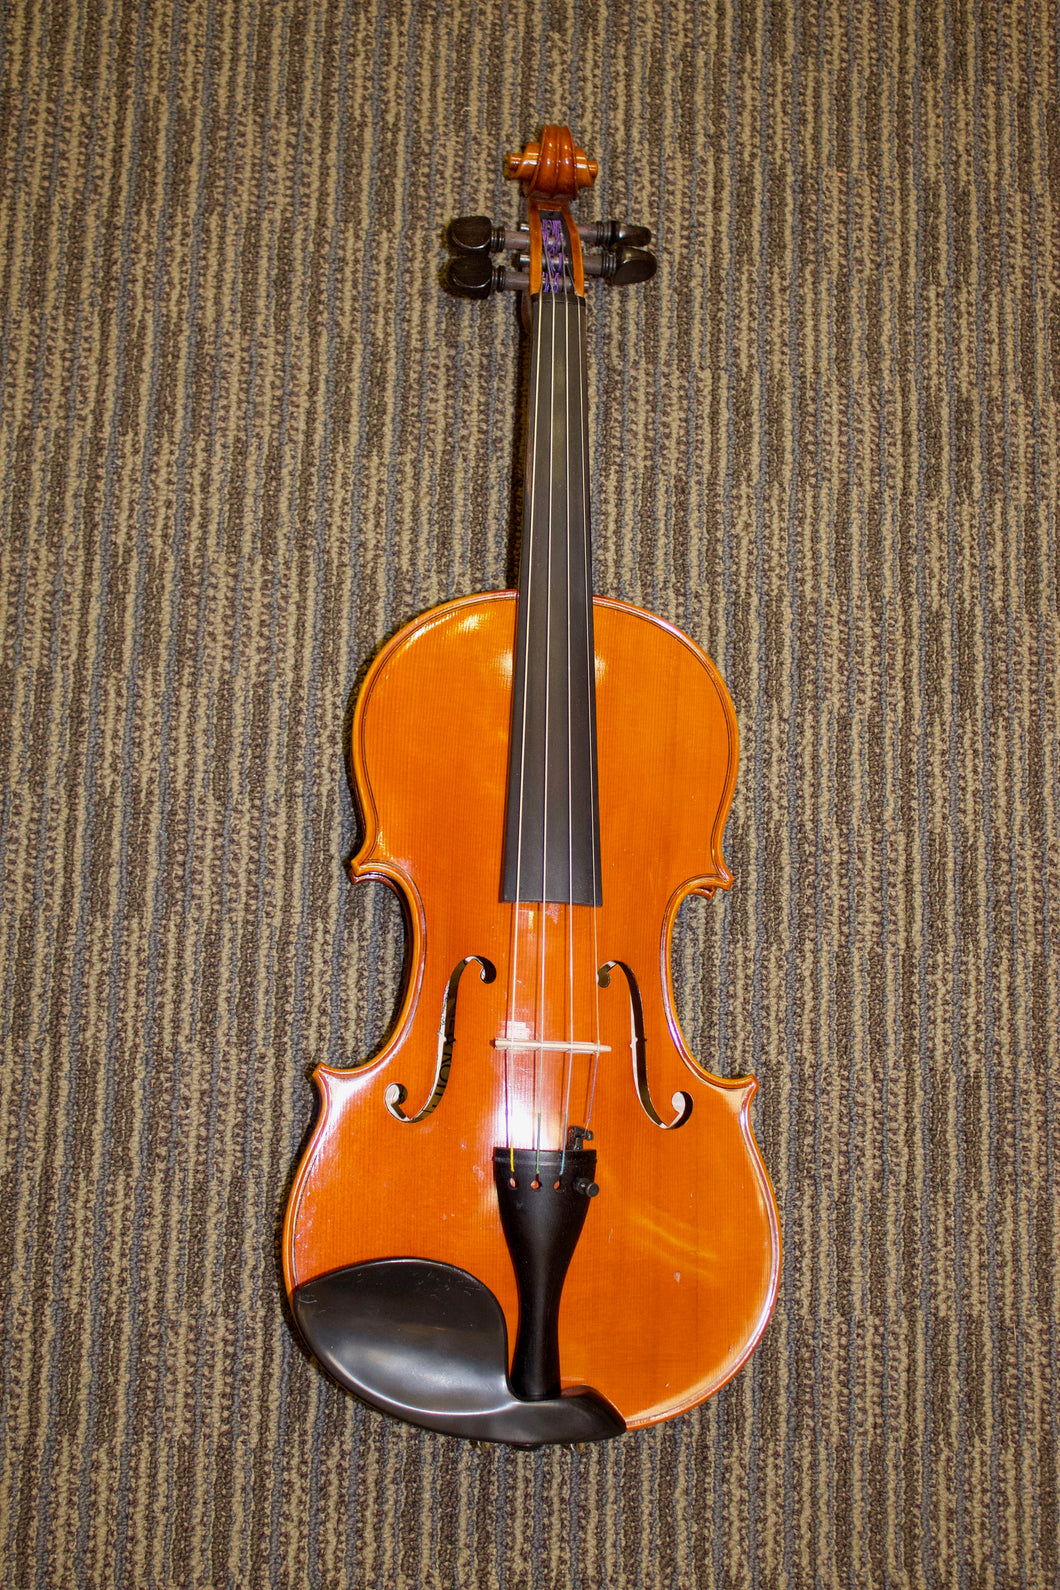 Sherl & Roth 4/4 Size Violin Model R30e4 (2004)